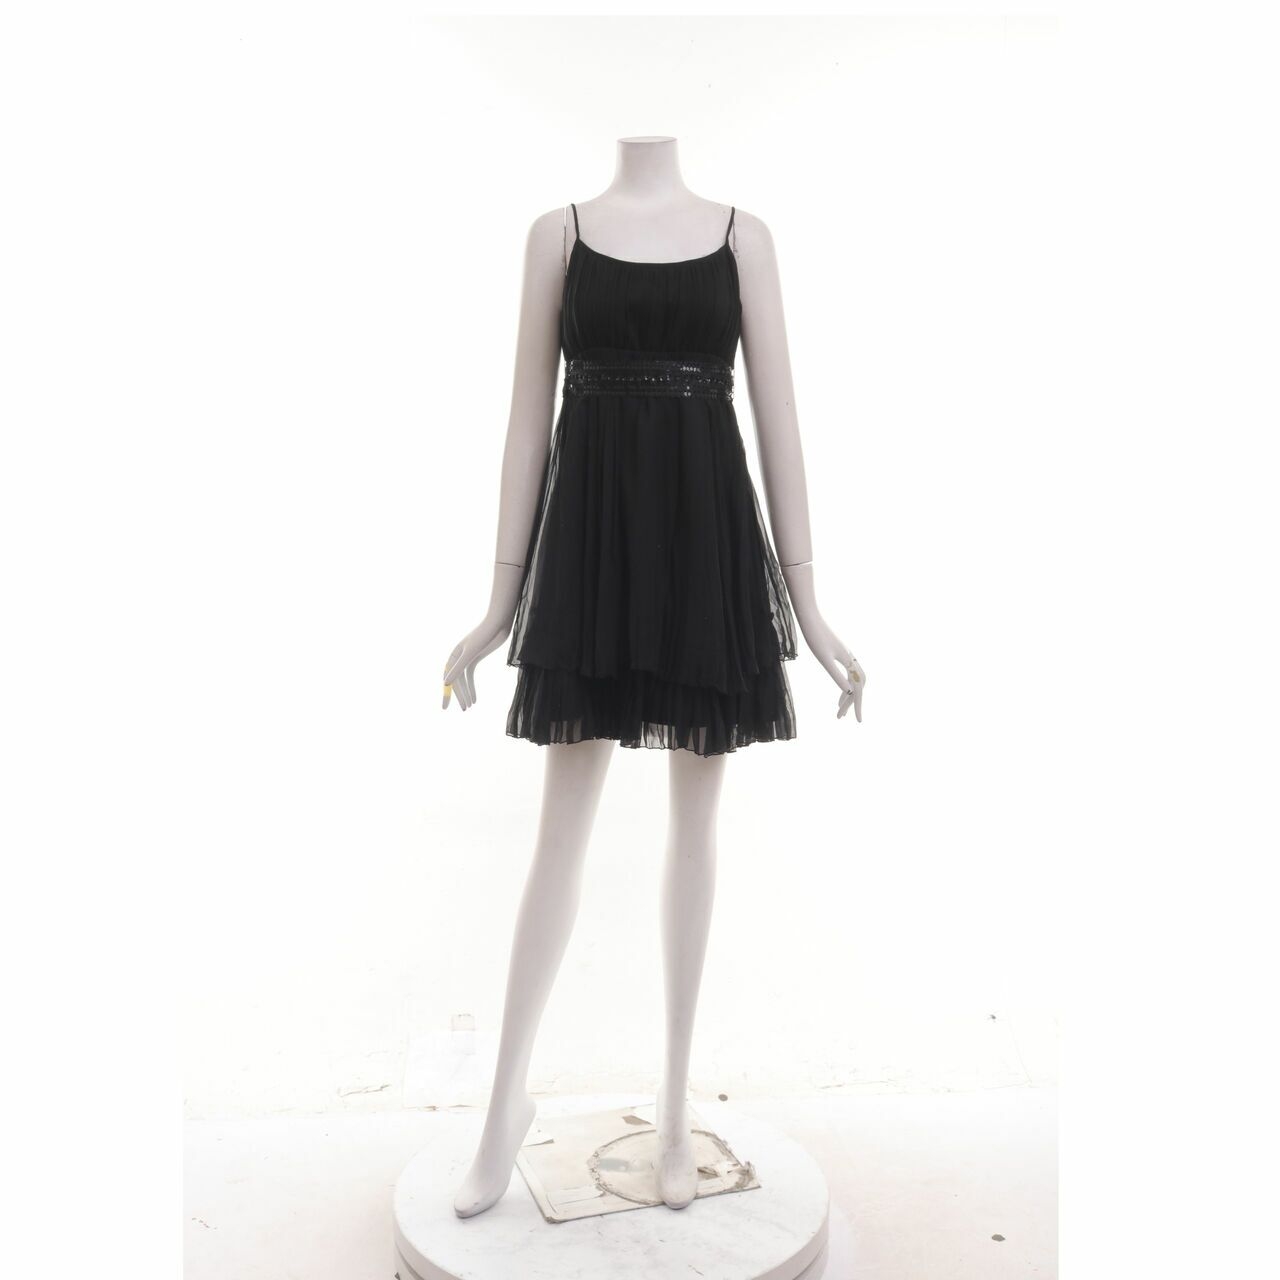 VOTUM By Sebastian & Cristina Black Mini Dress